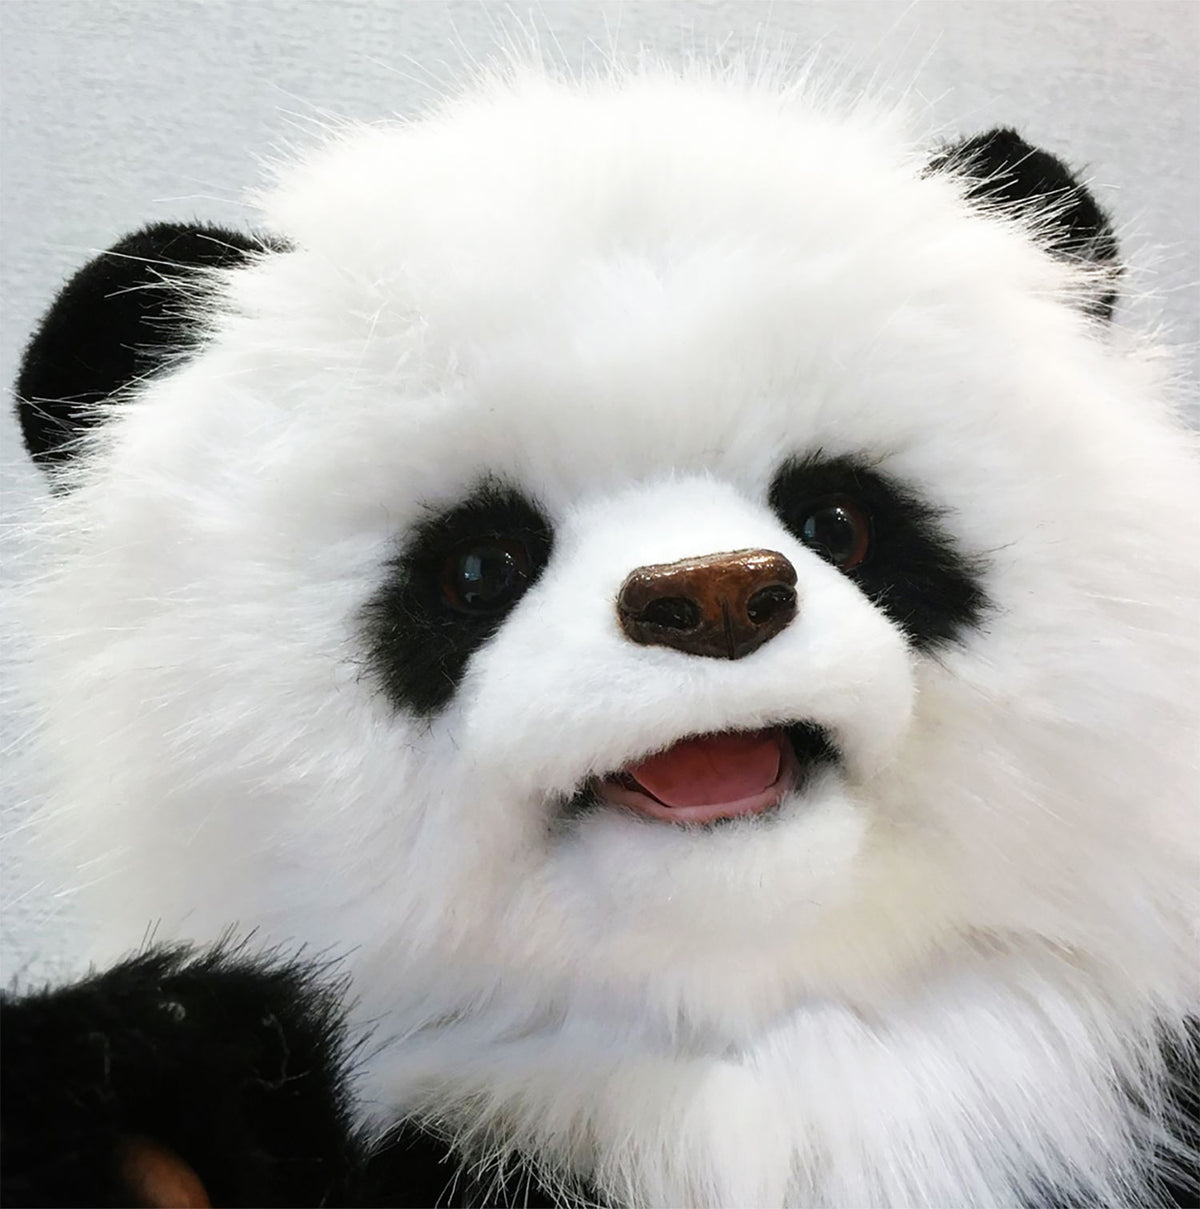 PLUSH Panda, Panda Bear Stuffed Animal - Medium Panda Realistic Art Doll